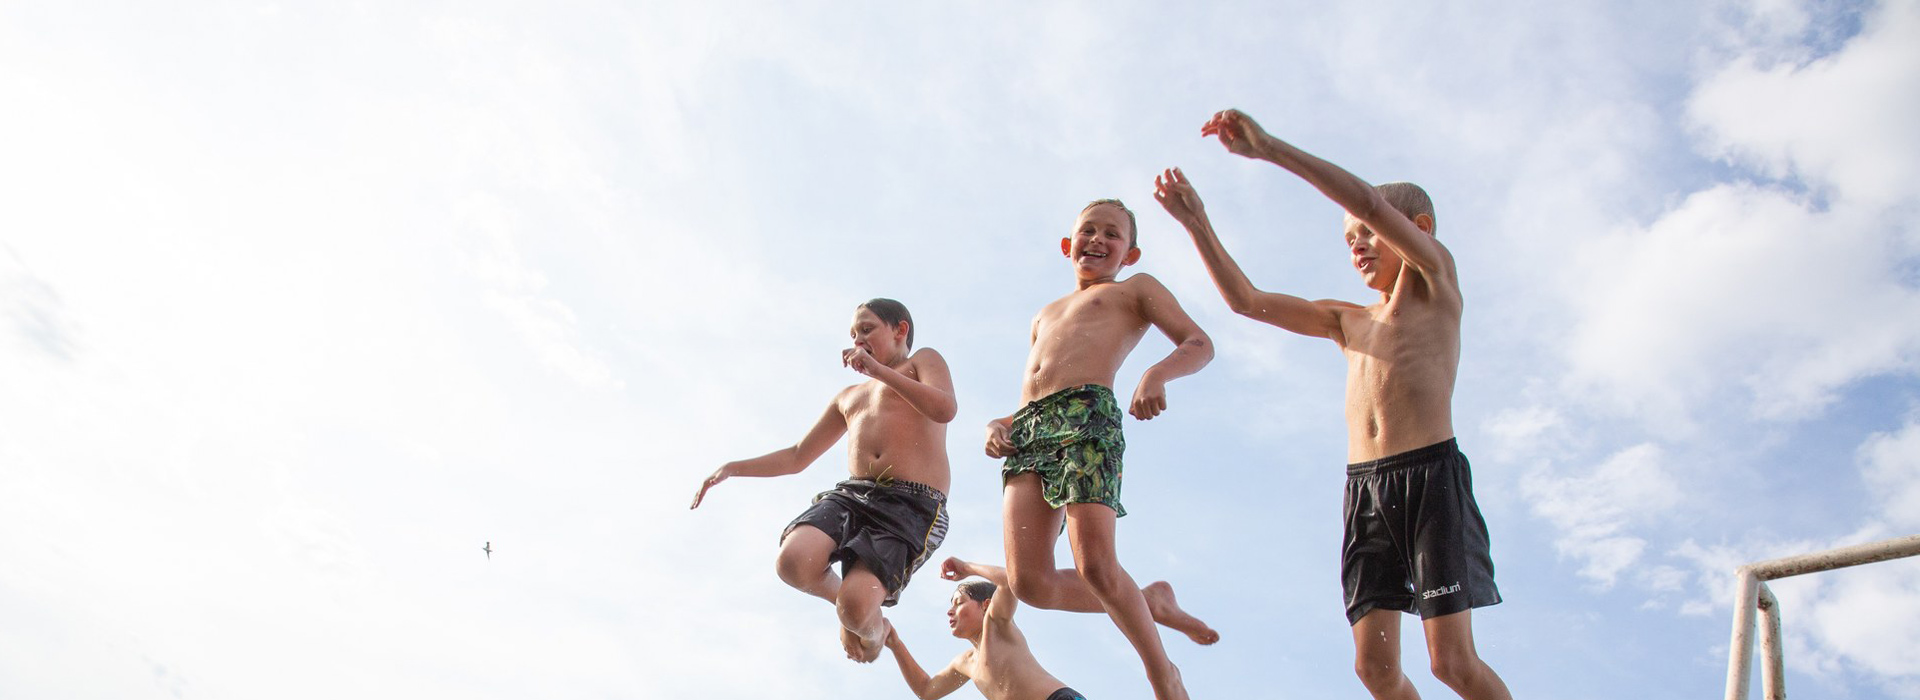 Lapset hyppäävät hyppytornista veteen.